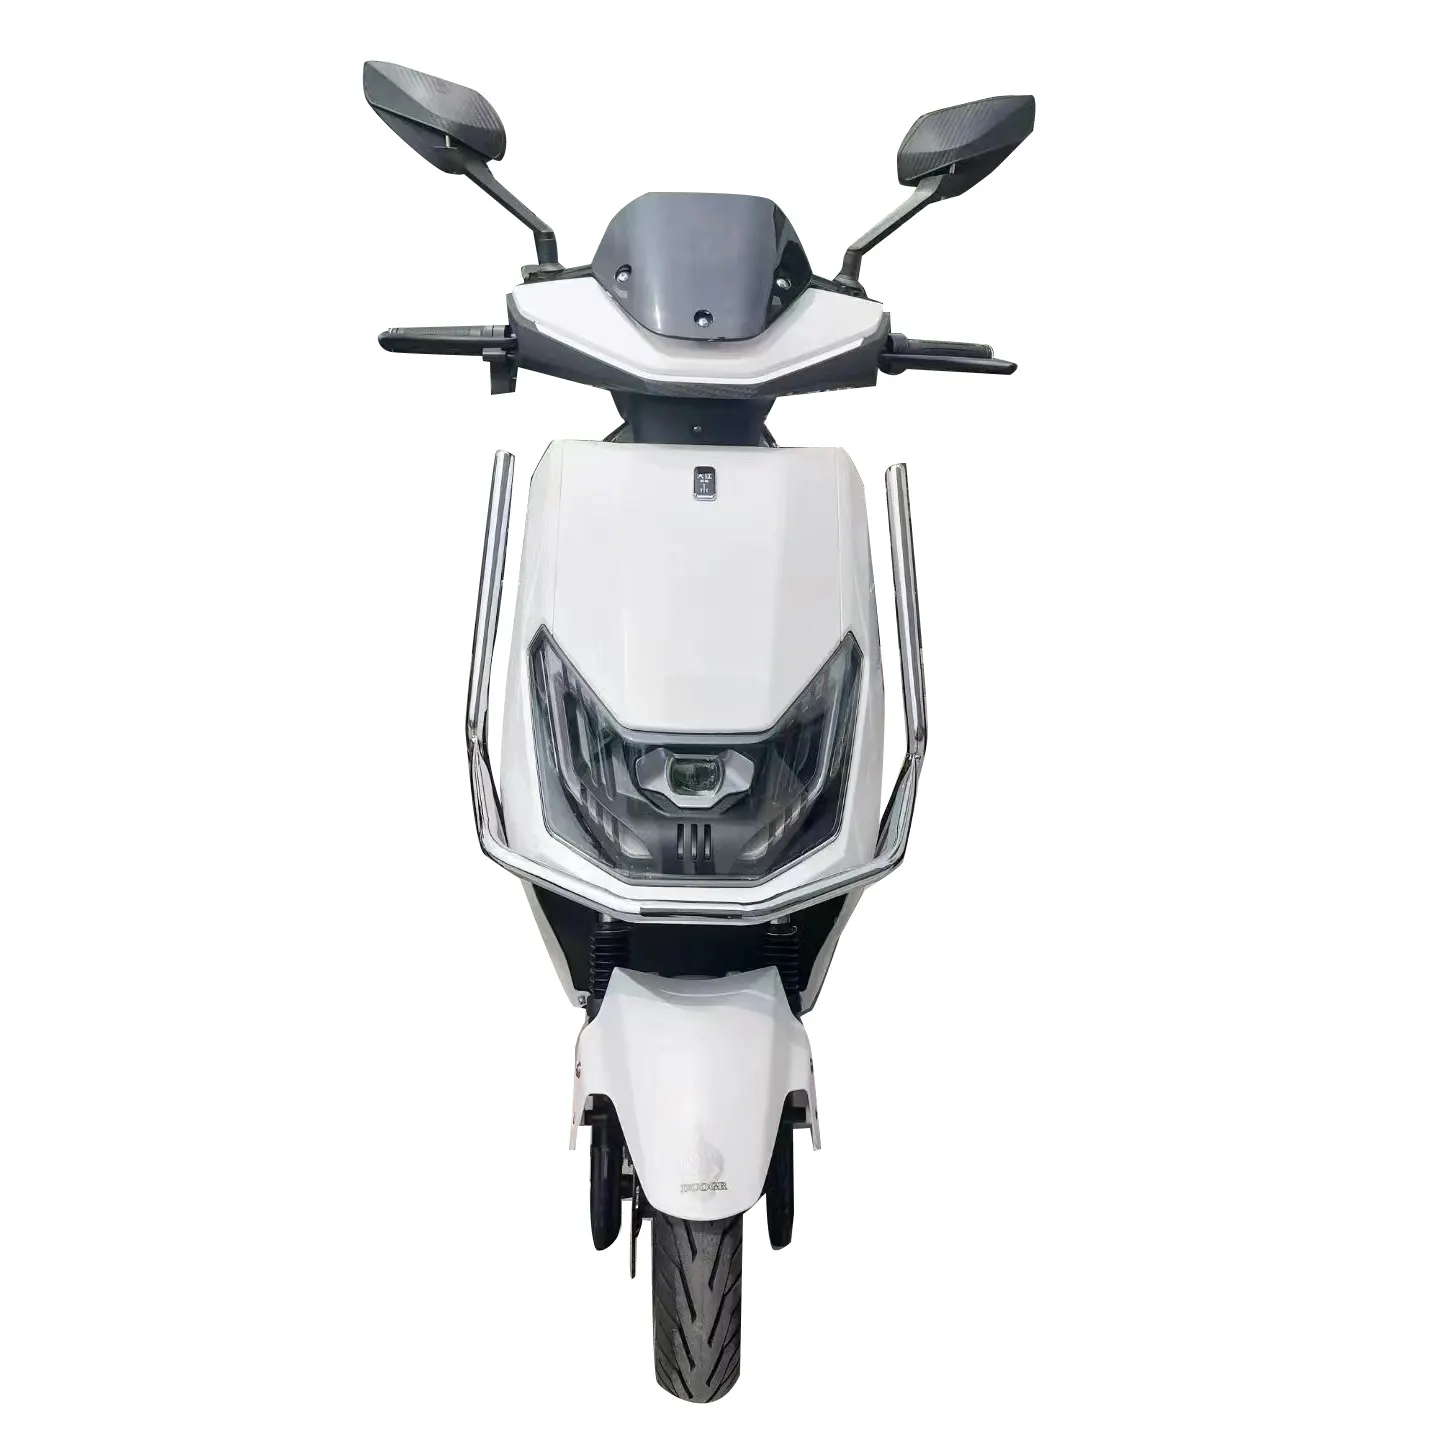 Yüksek kalite ucuz fiyat sokak yasal çapraz motosiklet elektrik kapalı yol motosiklet yetişkinler için